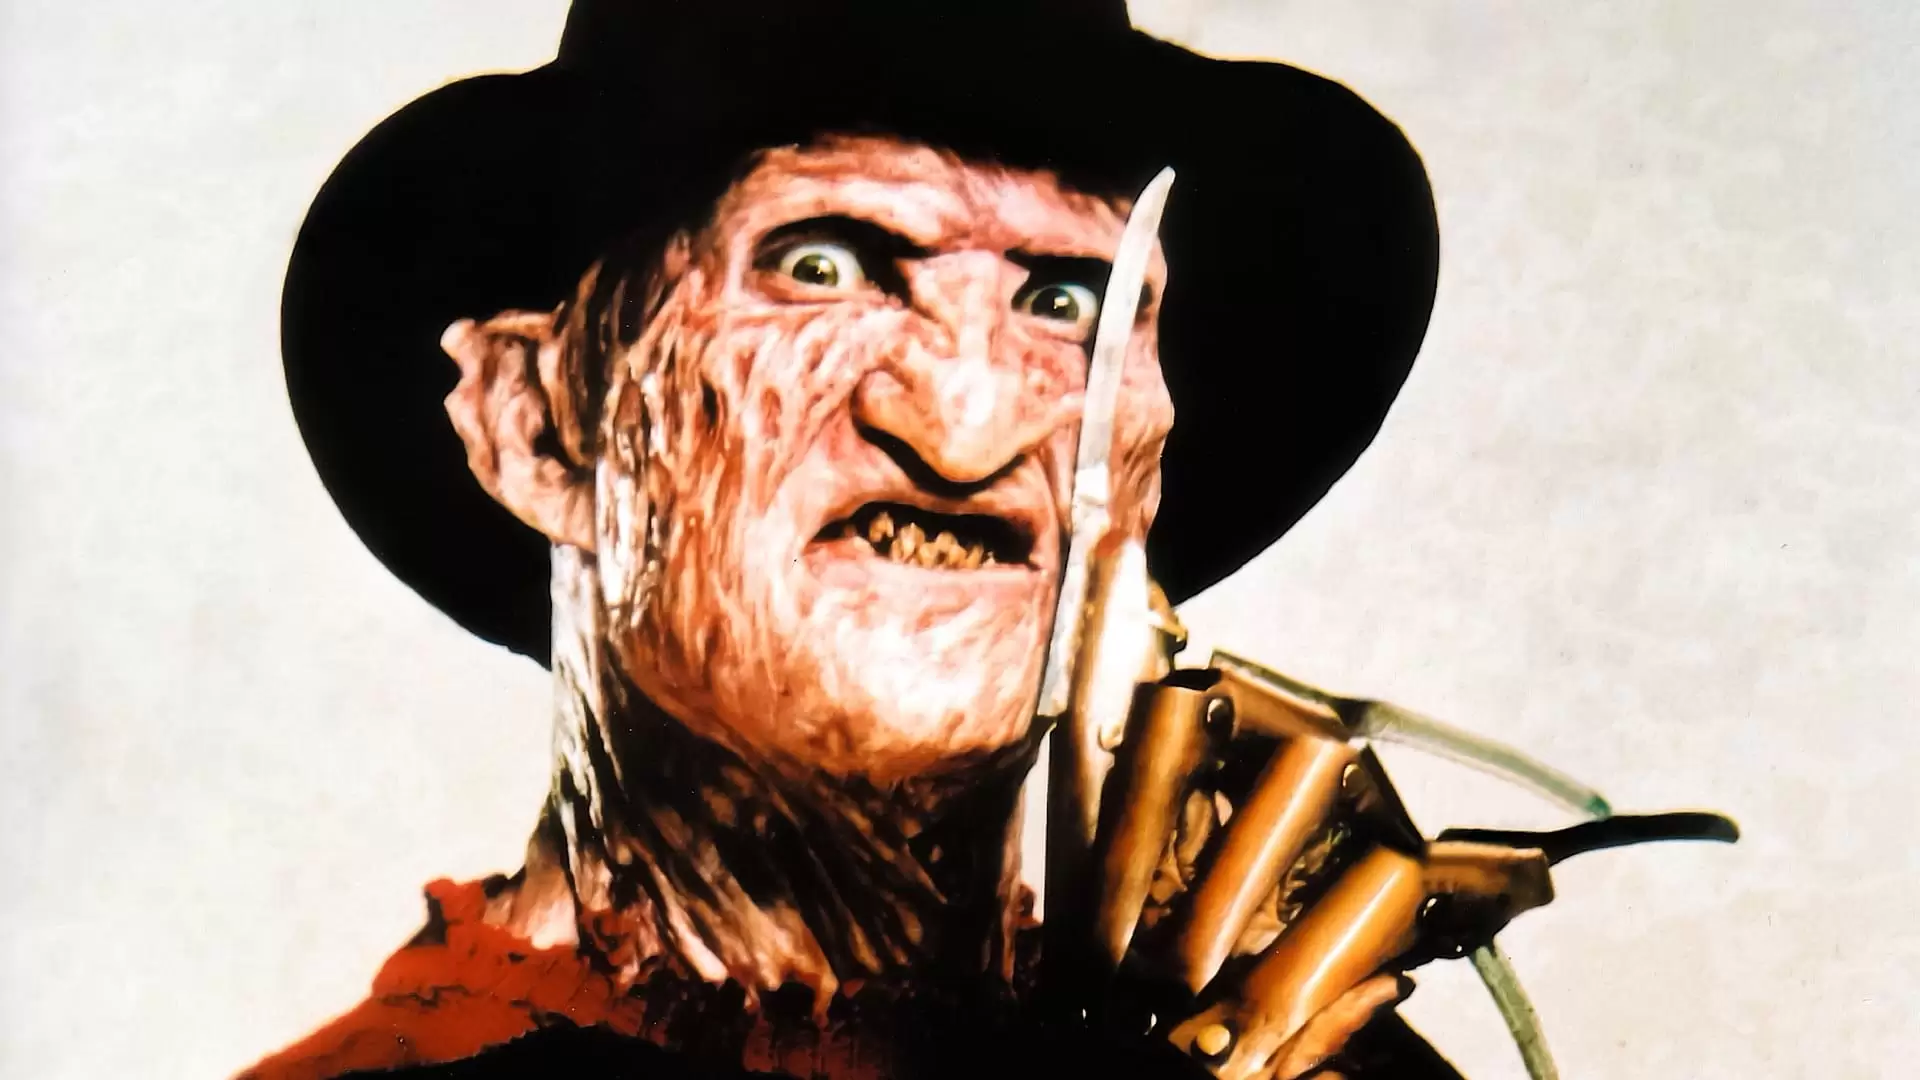 دانلود فیلم A Nightmare on Elm Street 2: Freddy’s Revenge 1985 (کابوس در خیابان الم ۲: انتقام فردی) با زیرنویس فارسی